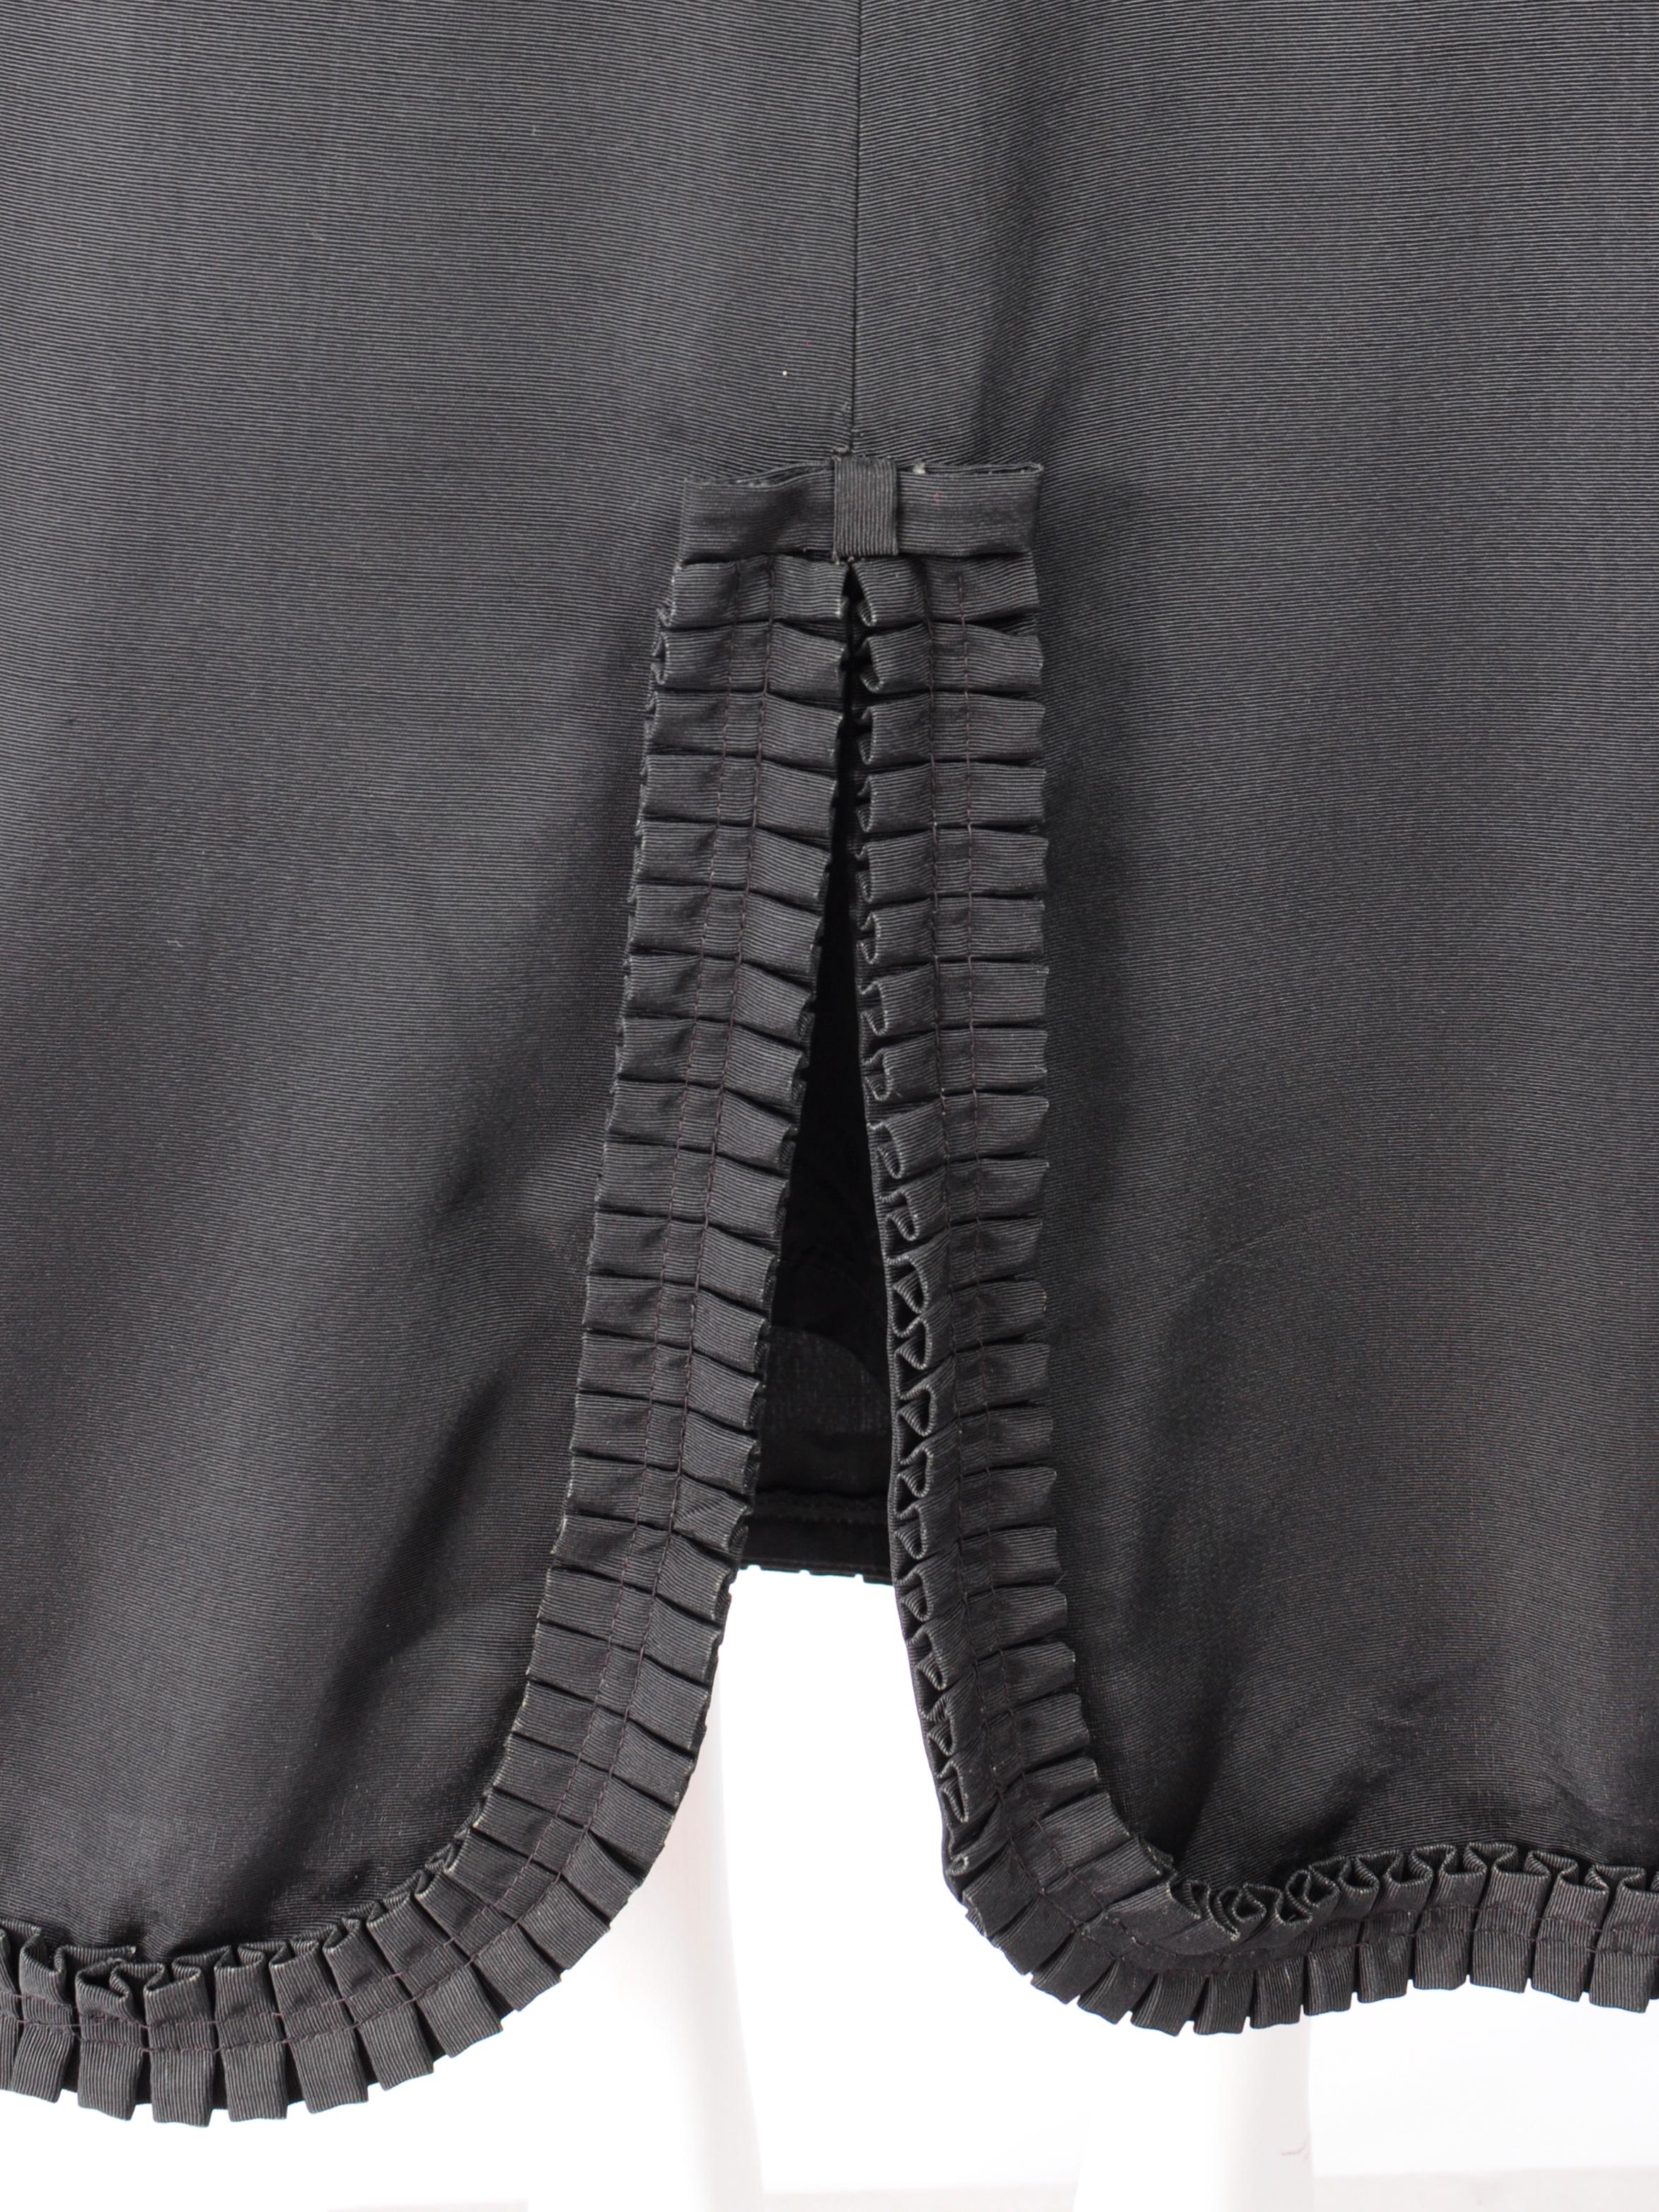 Mary Quant Ginger Group maxi skirt in black from the 1960s with A-Line silhouette and ruffle and bow bottom hem. La jupe se situe au niveau de la taille et s'évase à partir de celle-ci. Cette jupe ligne A de Mary Quant est une pièce d'archive datant